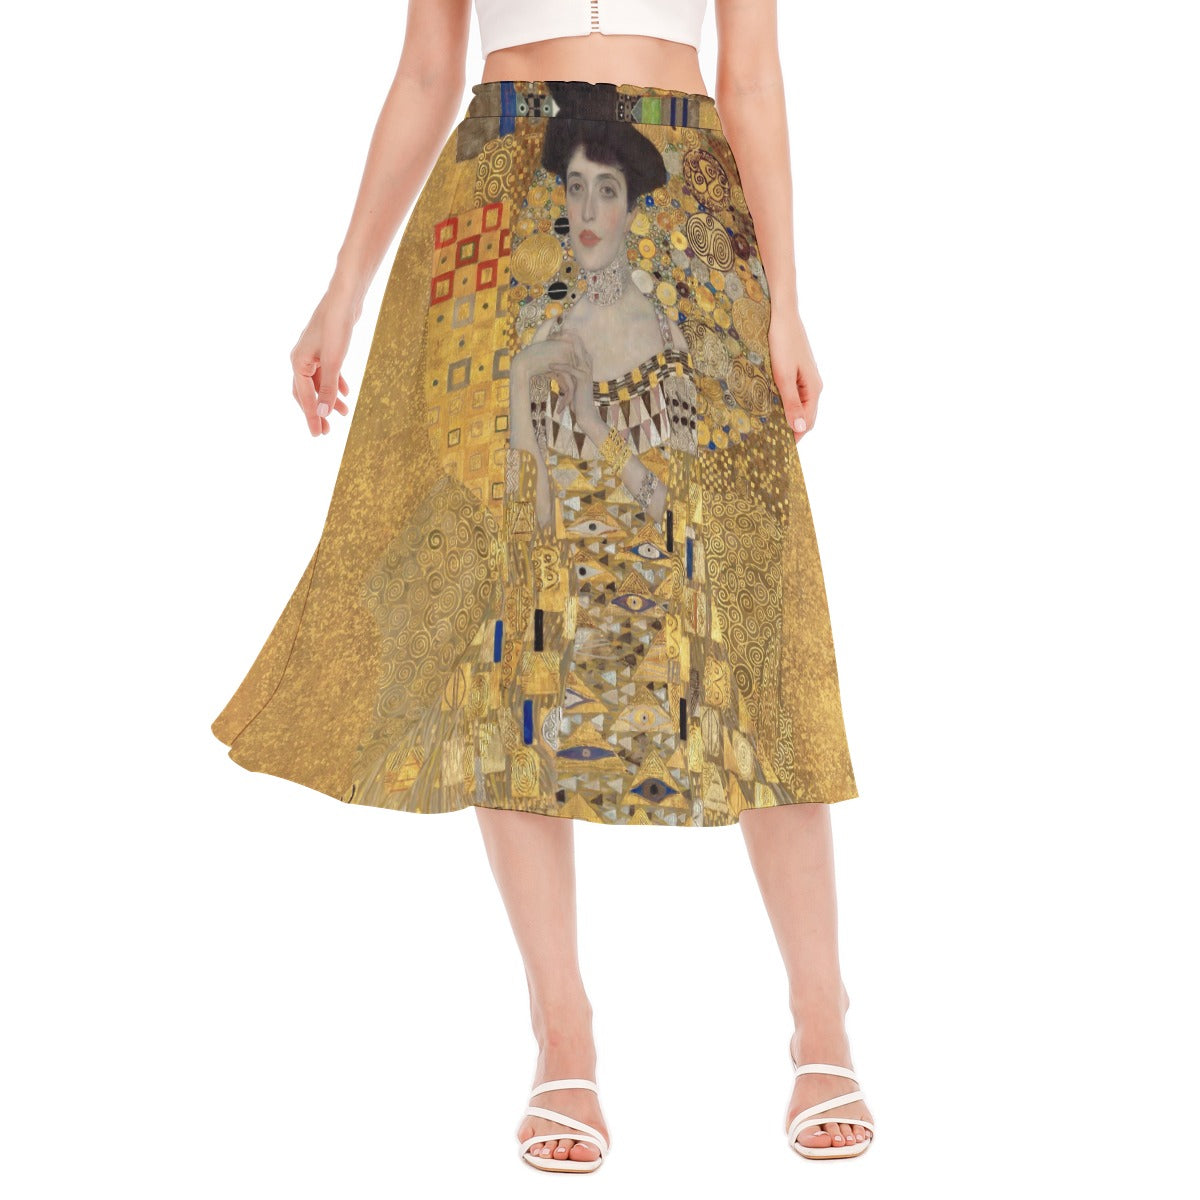 Enchanted Gold Elegance Chiffon Skirt on white background